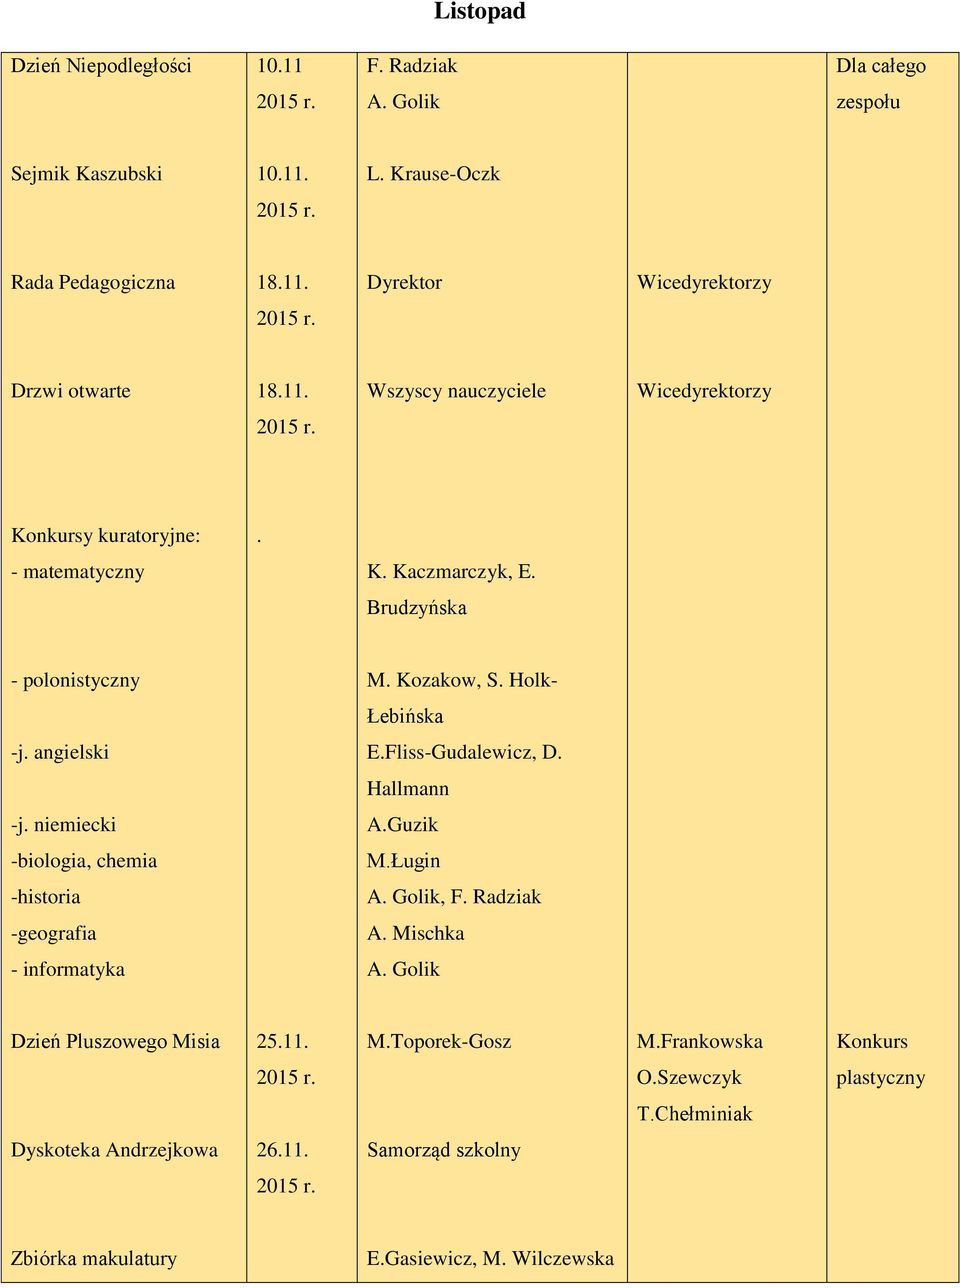 Fliss-Gudalewicz, D. Hallmann -j. niemiecki A.Guzik -biologia, chemia M.Ługin -historia A. Golik, F. Radziak -geografia A. Mischka - informatyka A.